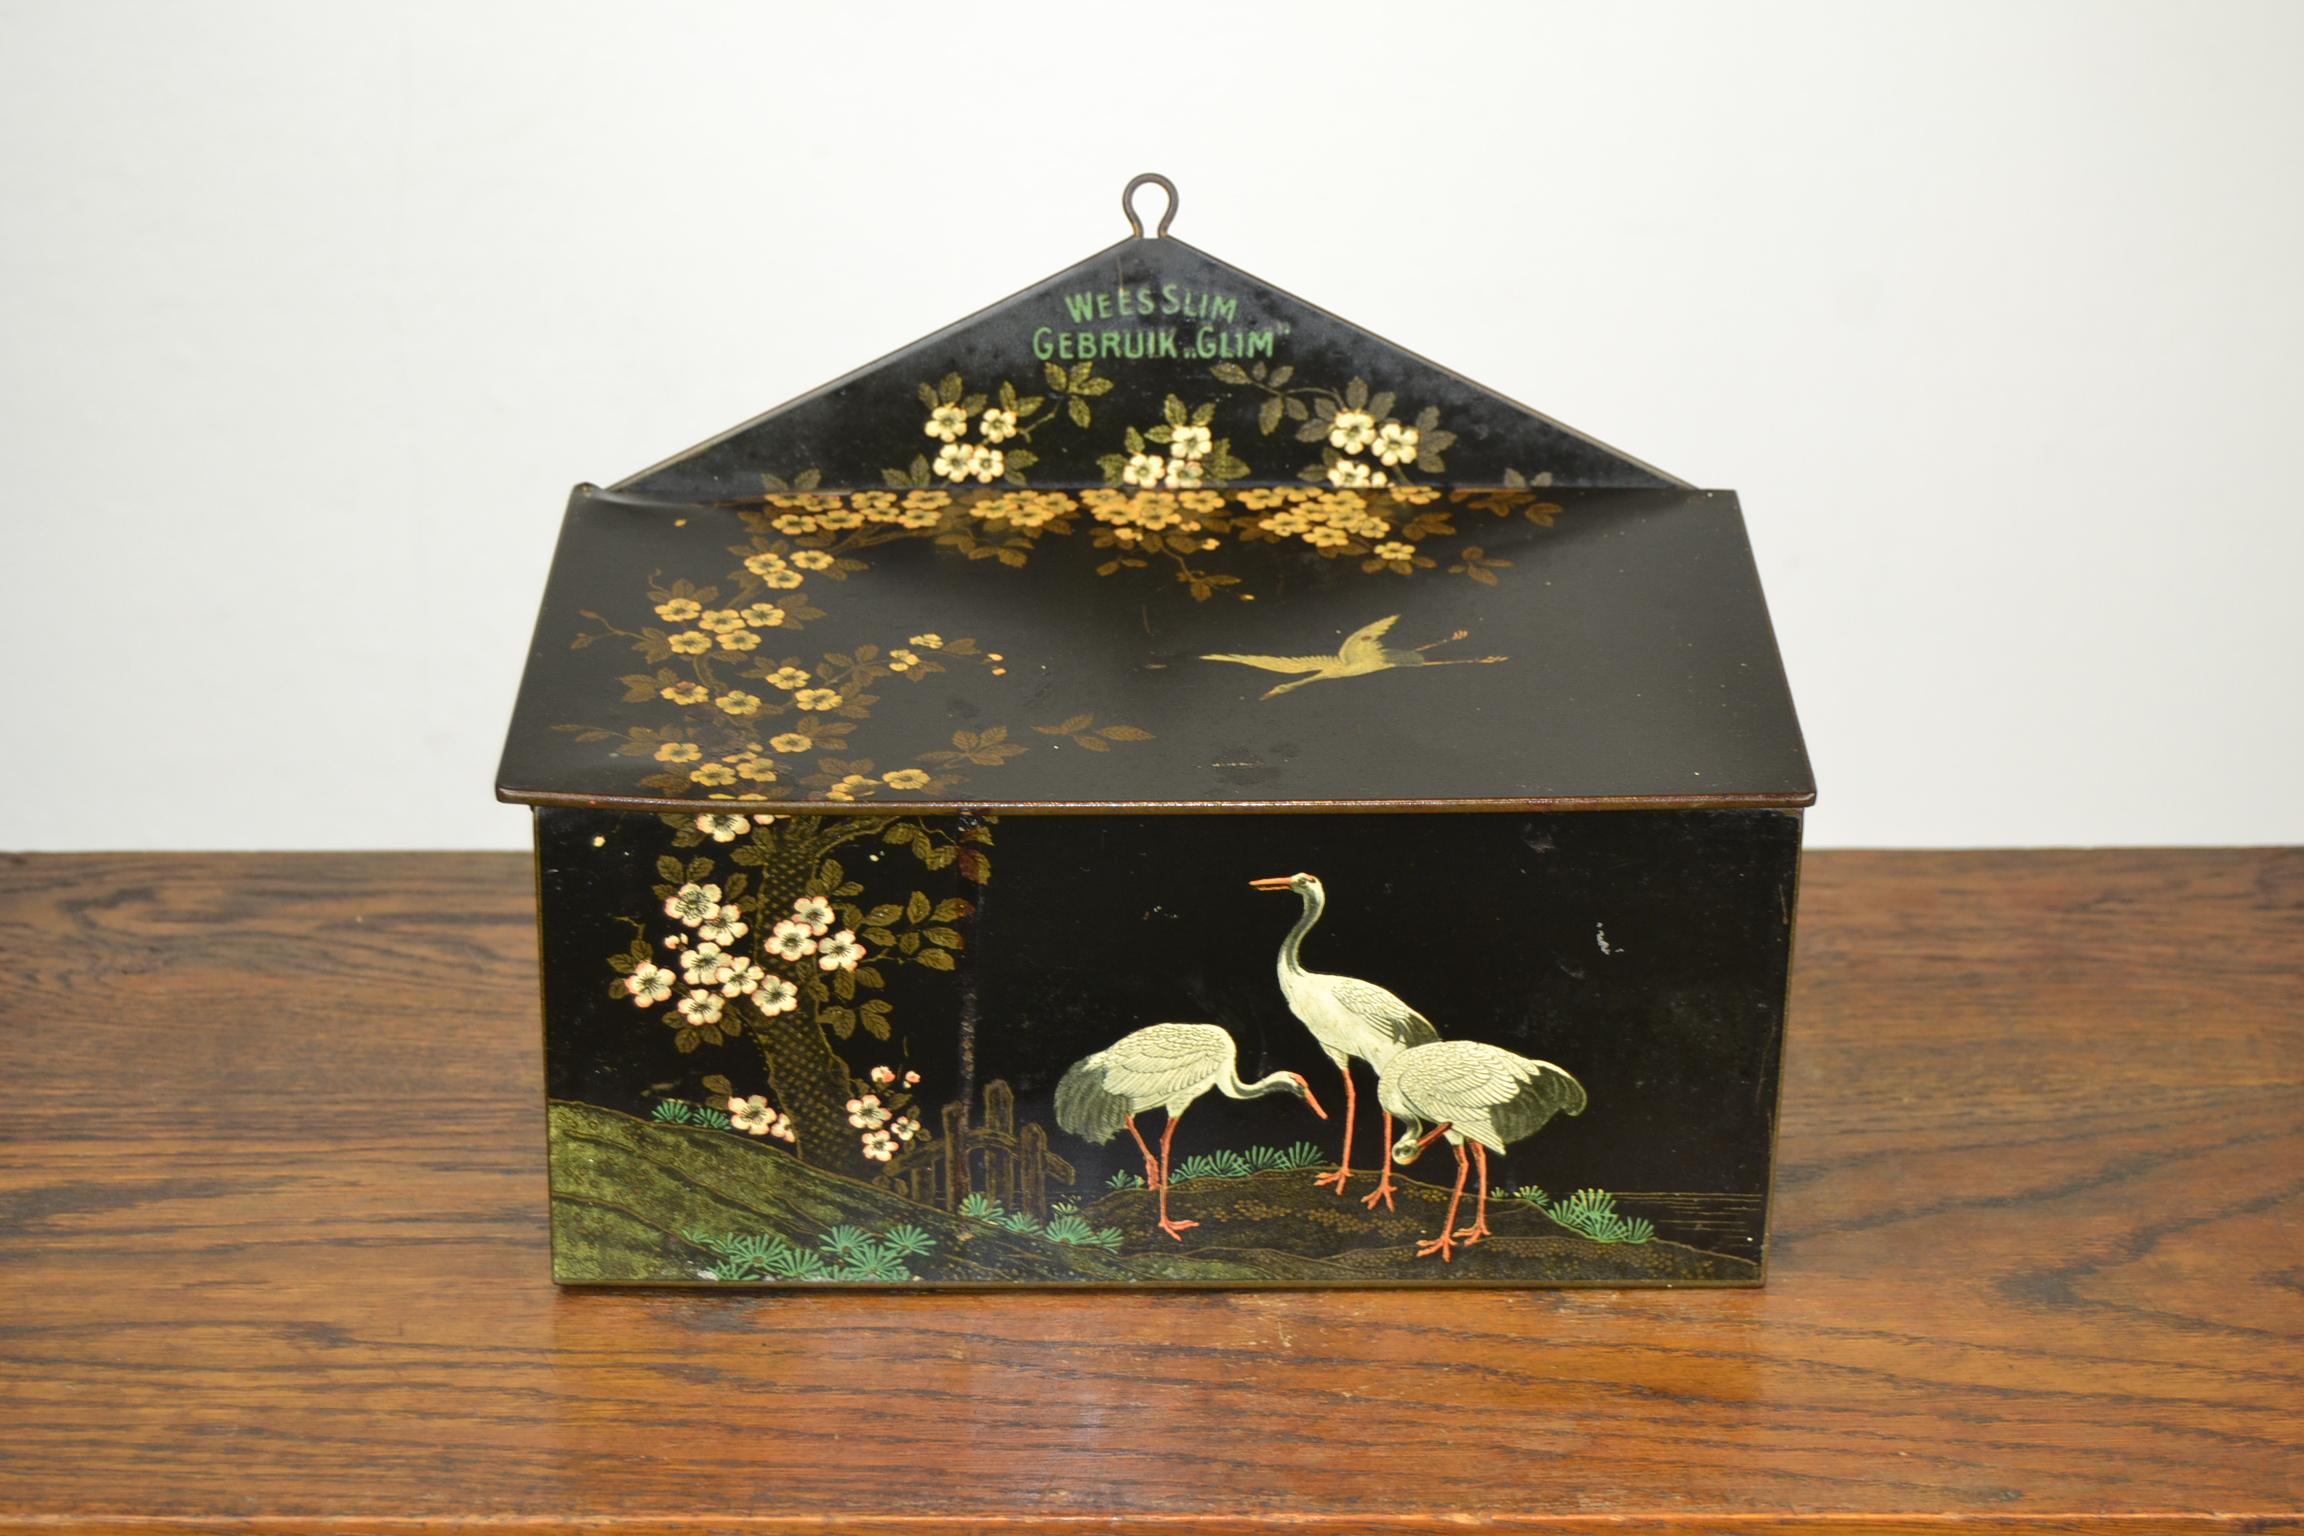 Boîte noire Art déco avec des oiseaux grues et des fleurs dans le style asiatique.
Cette boîte de rangement Art déco avec des grues date du début des années 1930 et a été fabriquée par la société néerlandaise Bekkers Dordrecht Holland. 
Il a été